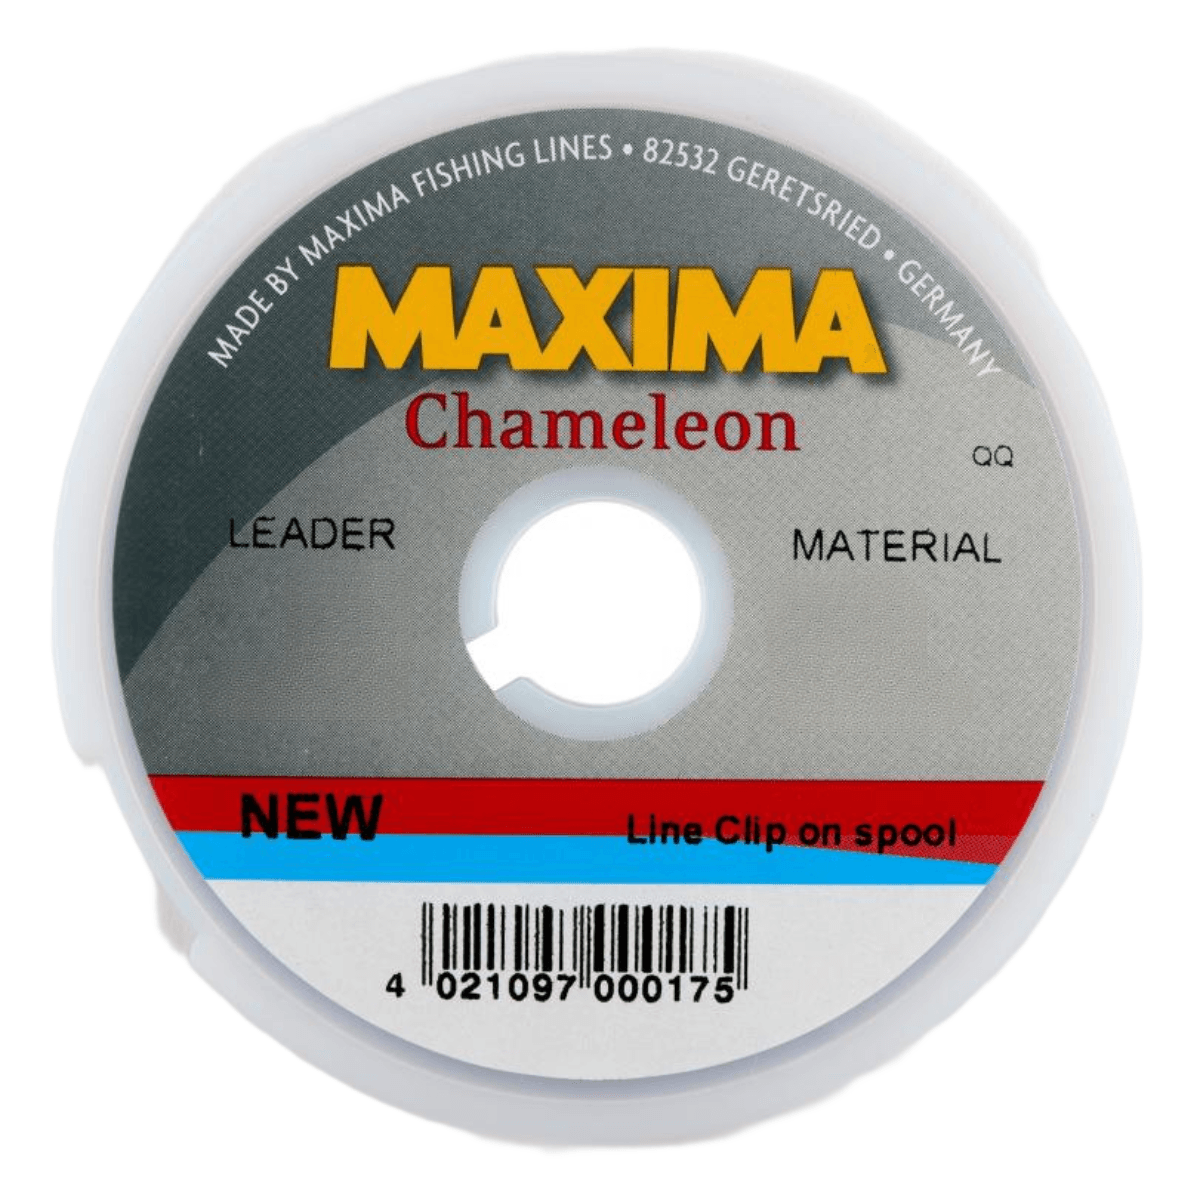 Maxima Chameleon Leader Wheel 30 lb